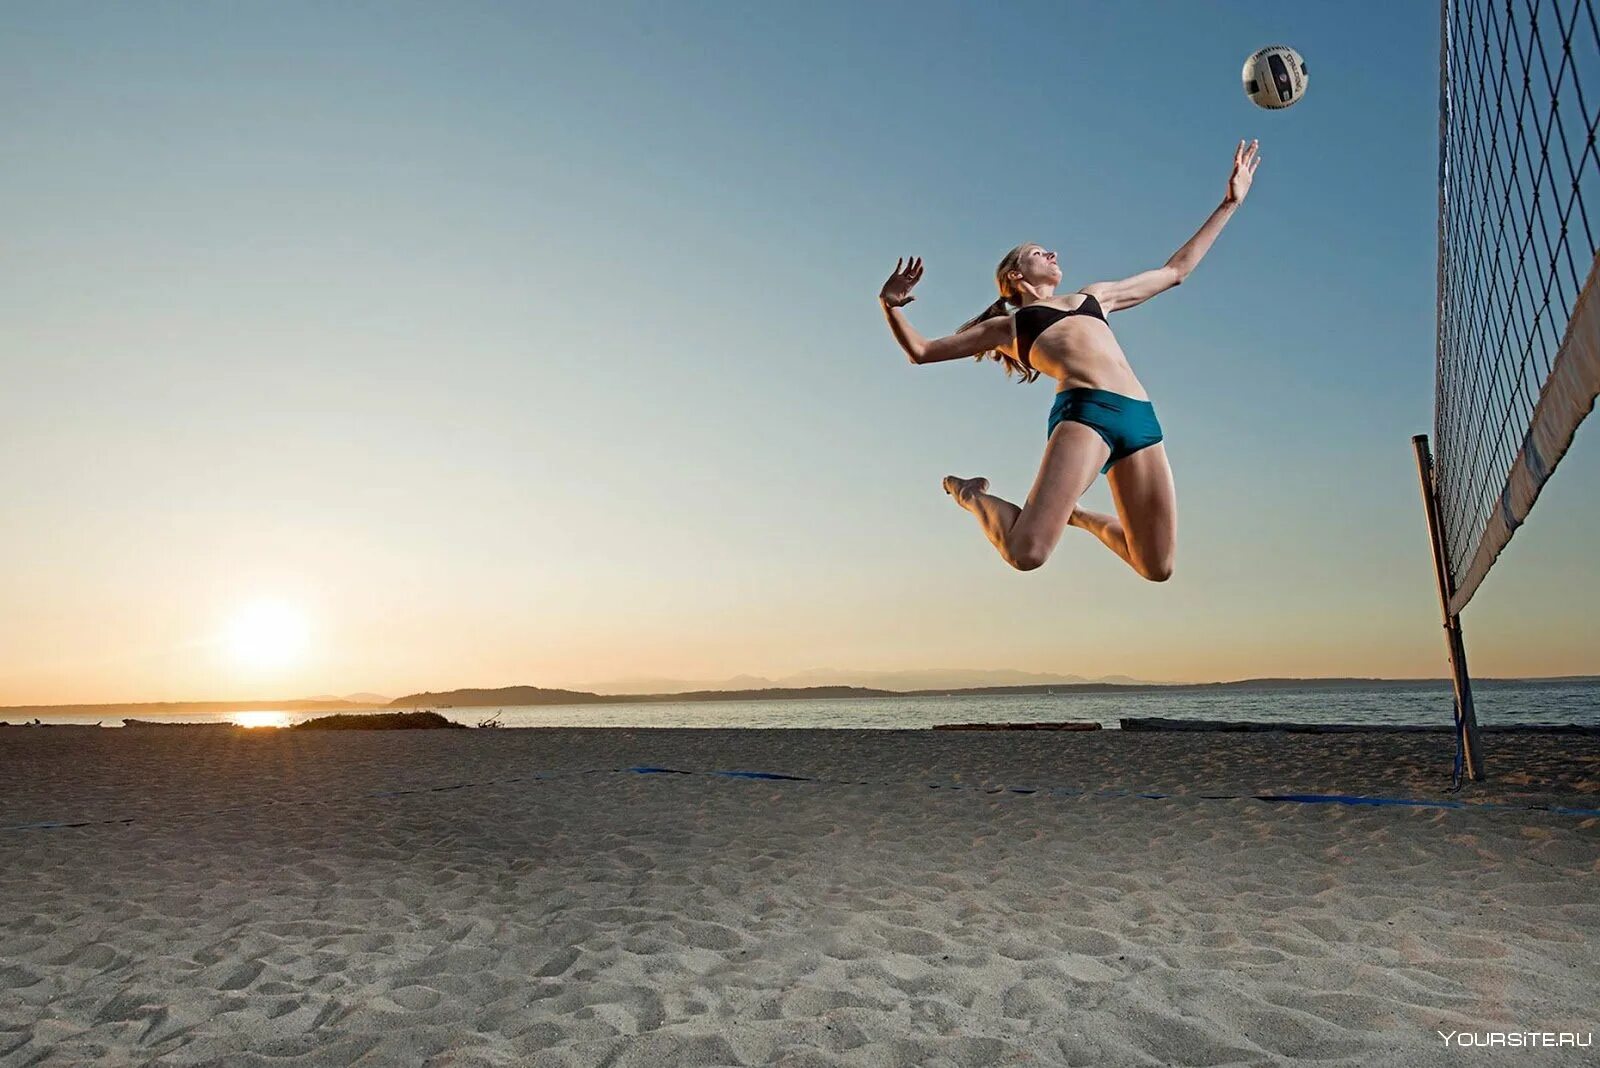 Ловля в прыжке. Пляжный волейбол. Волейбол на пляже. Волейболист в прыжке. Спорт волейбол.